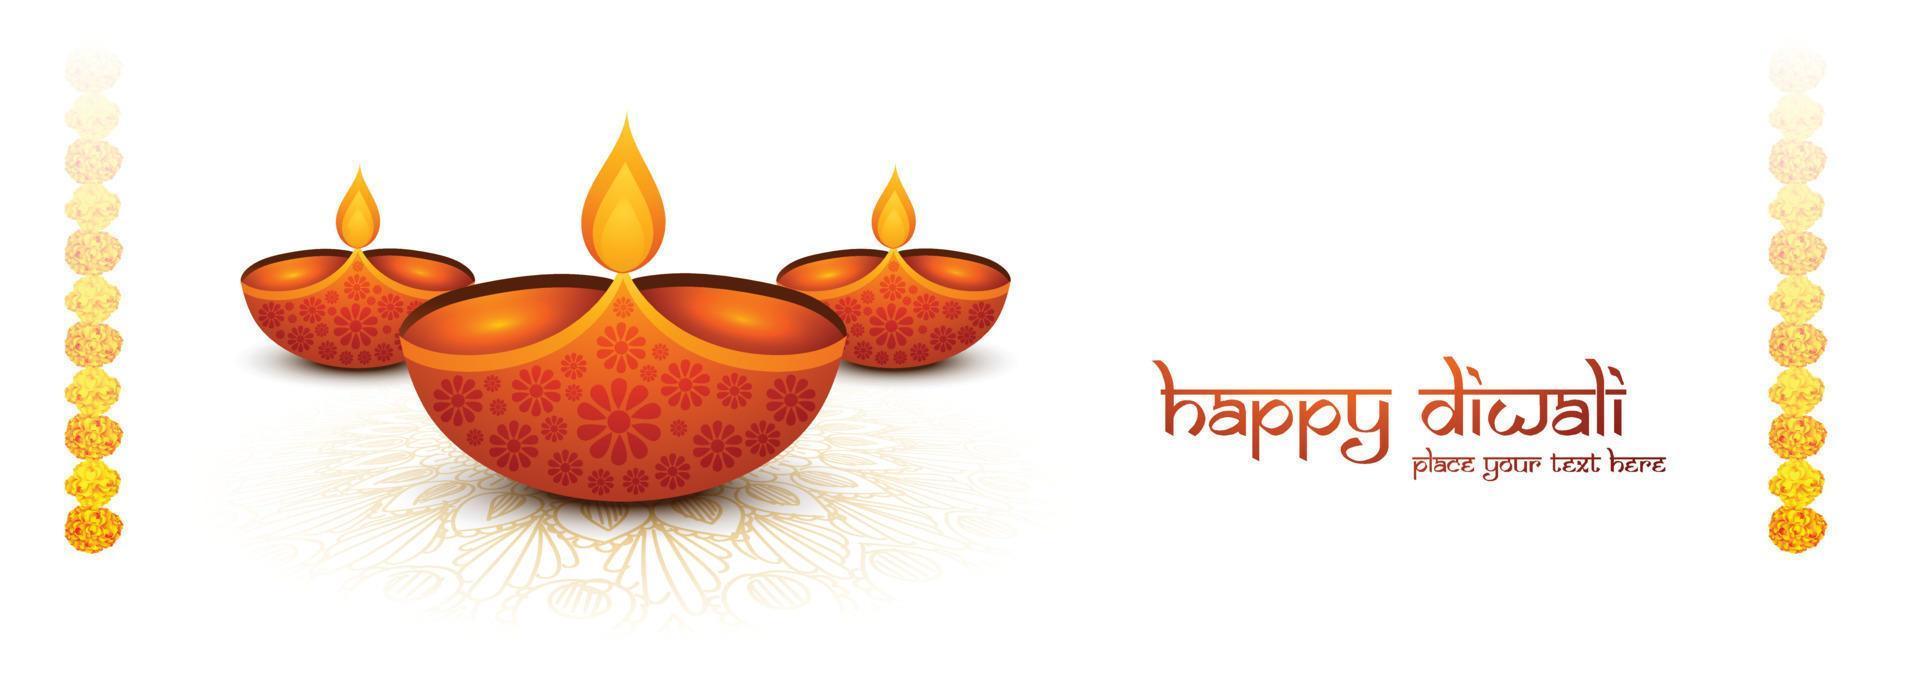 feliz diwali deseja banner com fundo de celebração de mandalas decorativas vetor